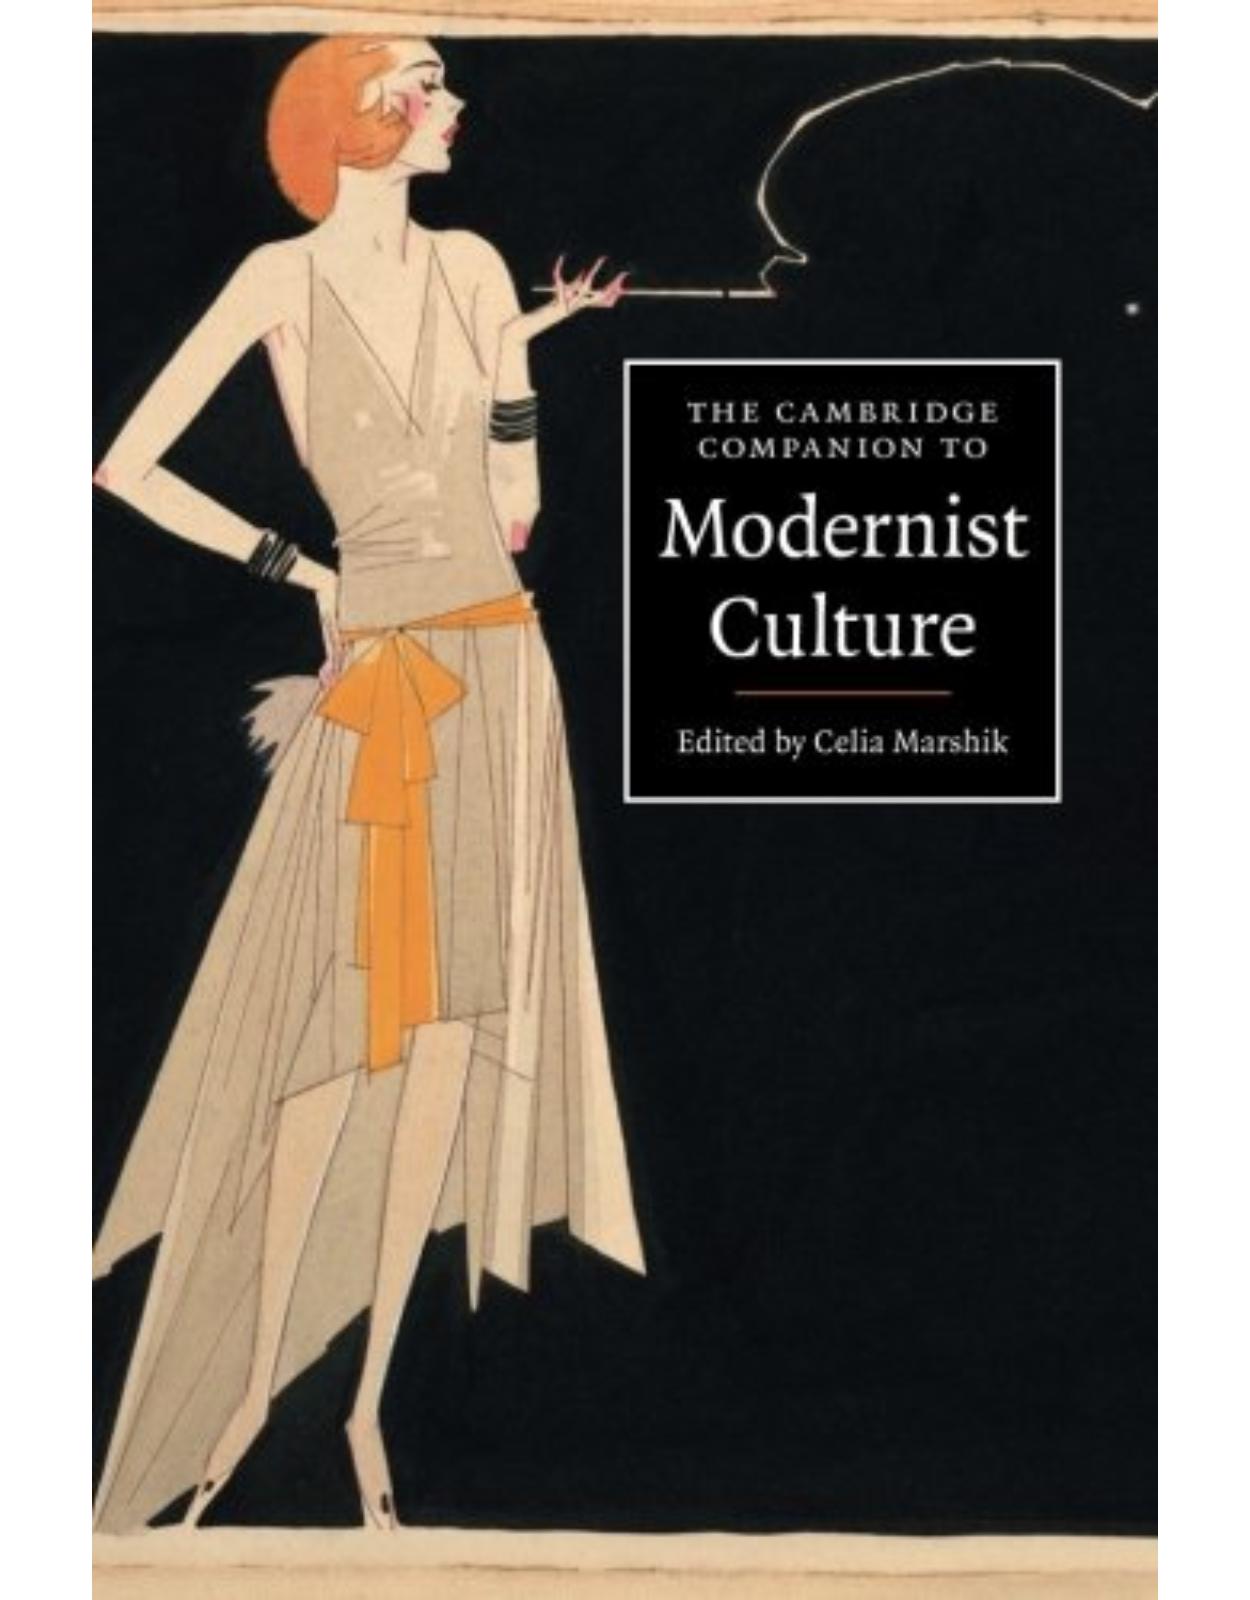 The Cambridge Companion to Modernist Culture (Cambridge Companions to Culture) 